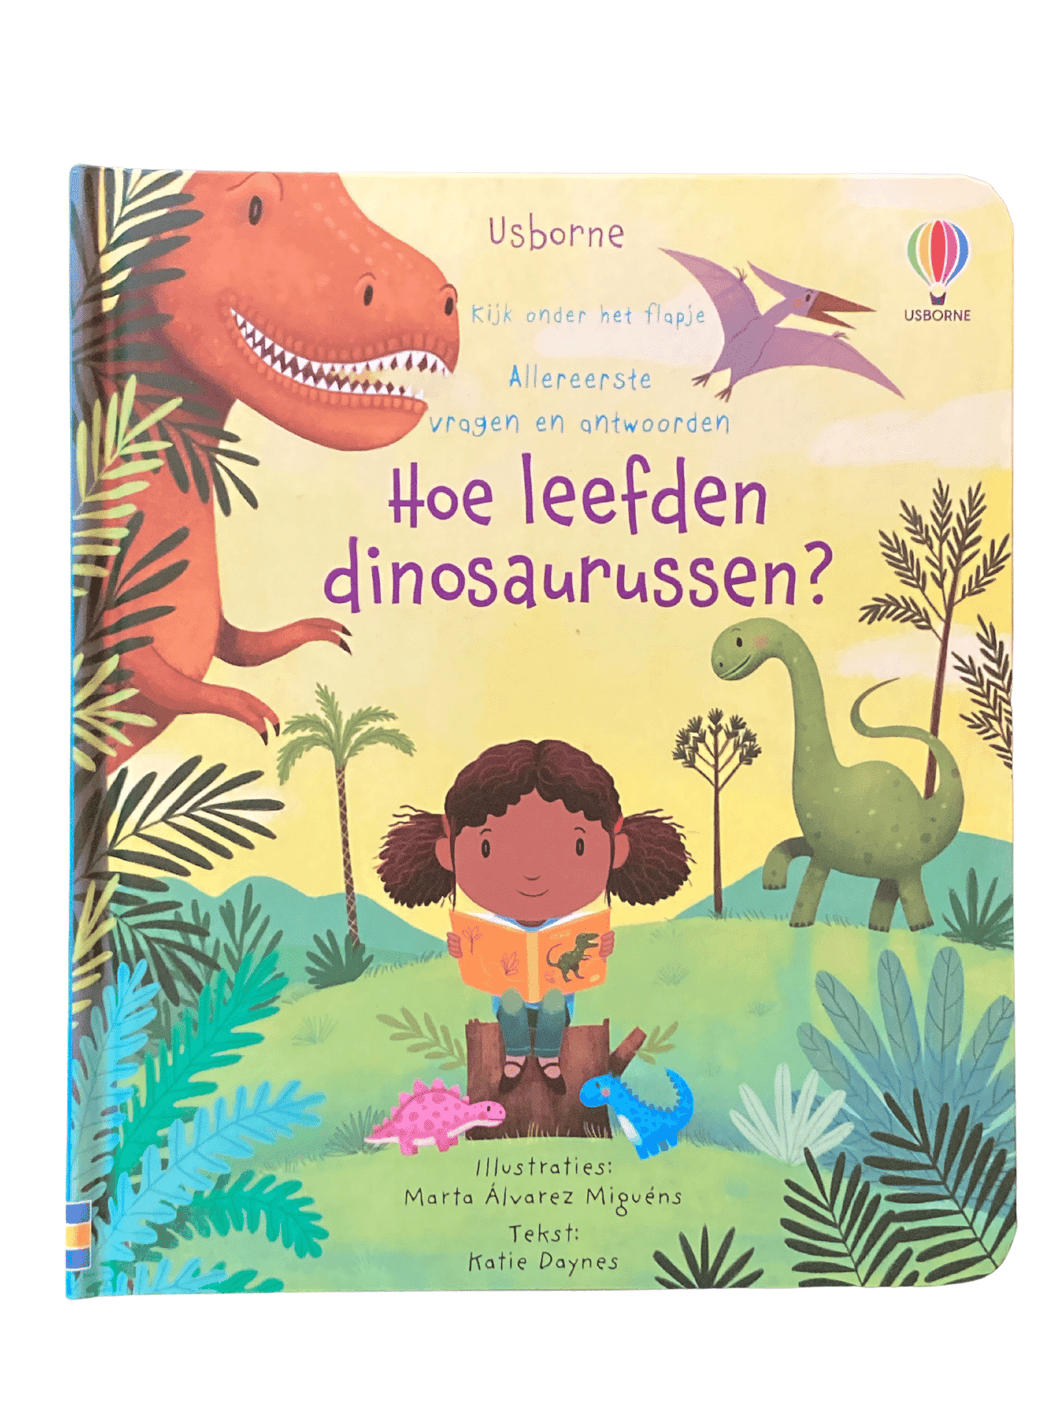 Usborne flapjesboek, allereerste vragen en antwoorden - Hoe leefden dinosaurussen?